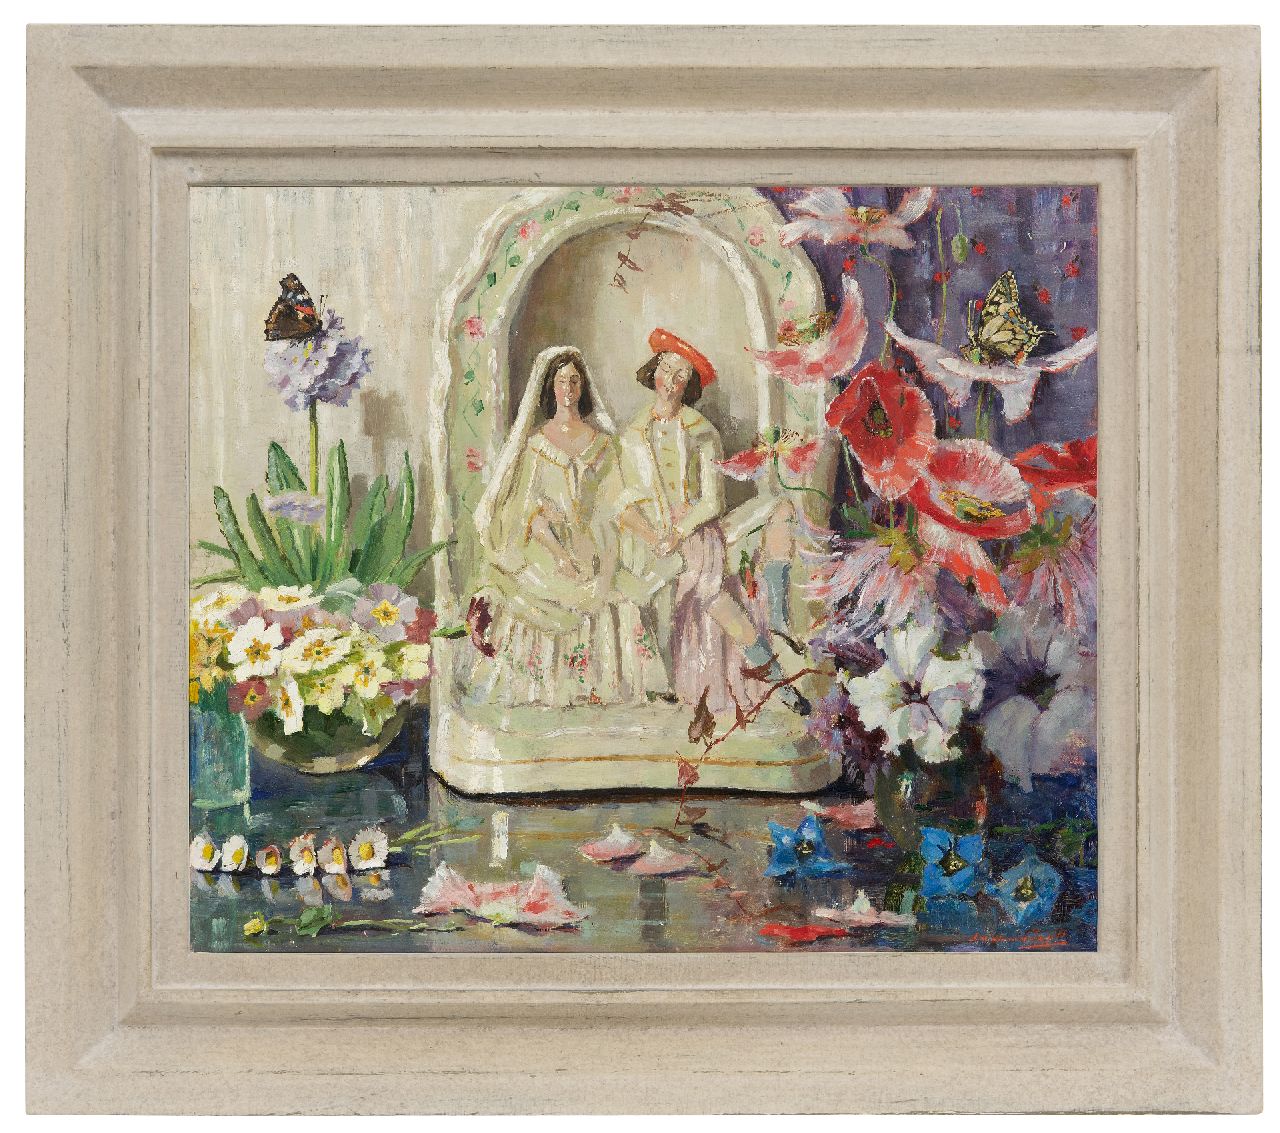 Dam van Isselt L. van | Lucie van Dam van Isselt | Schilderijen te koop aangeboden | Stilleven met bloemen, vlinders en porseleinen huwelijksbeeldje, olieverf op paneel 45,2 x 53,2 cm, gesigneerd rechtsonder